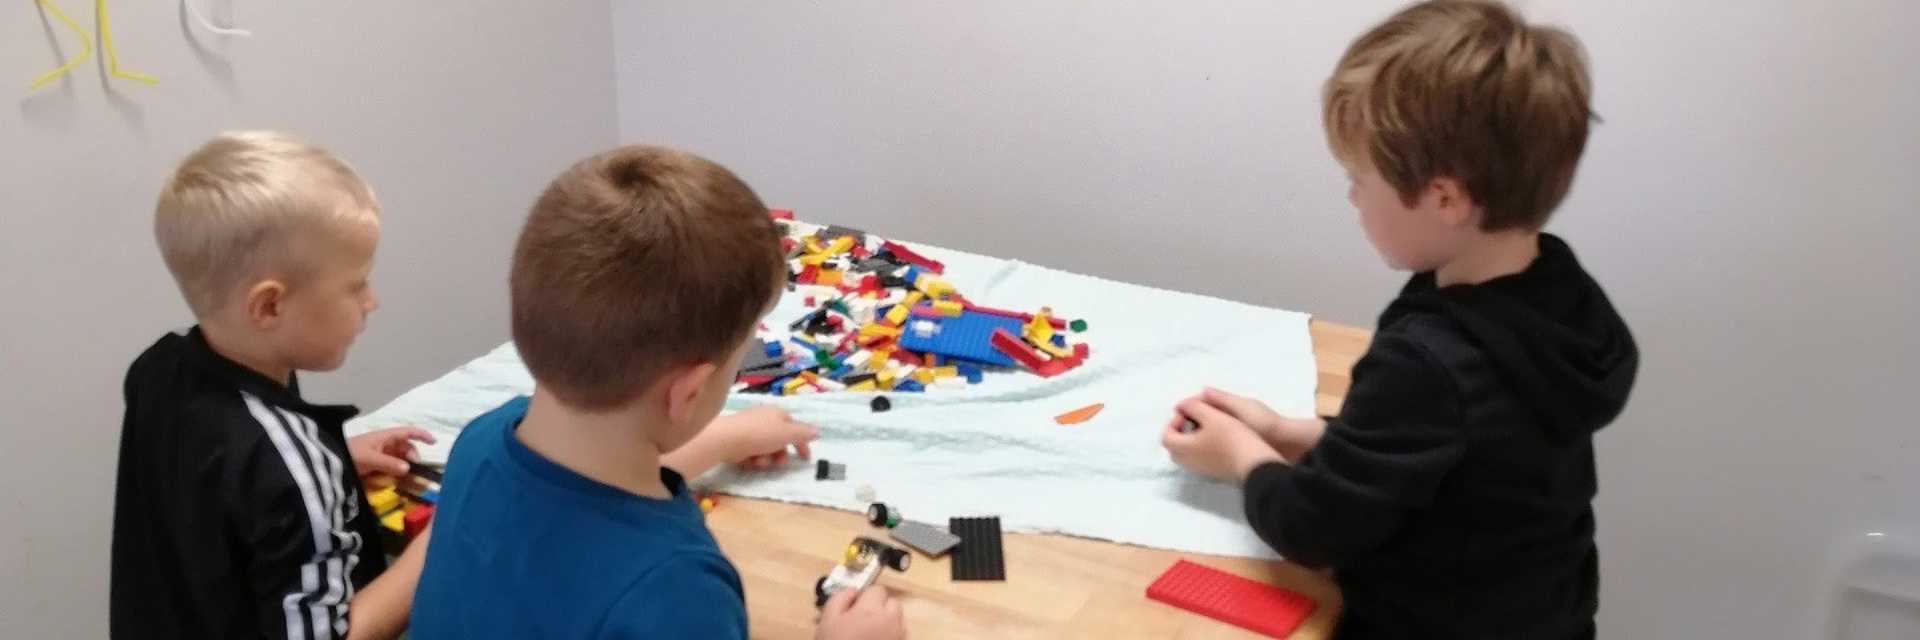 Lego bord